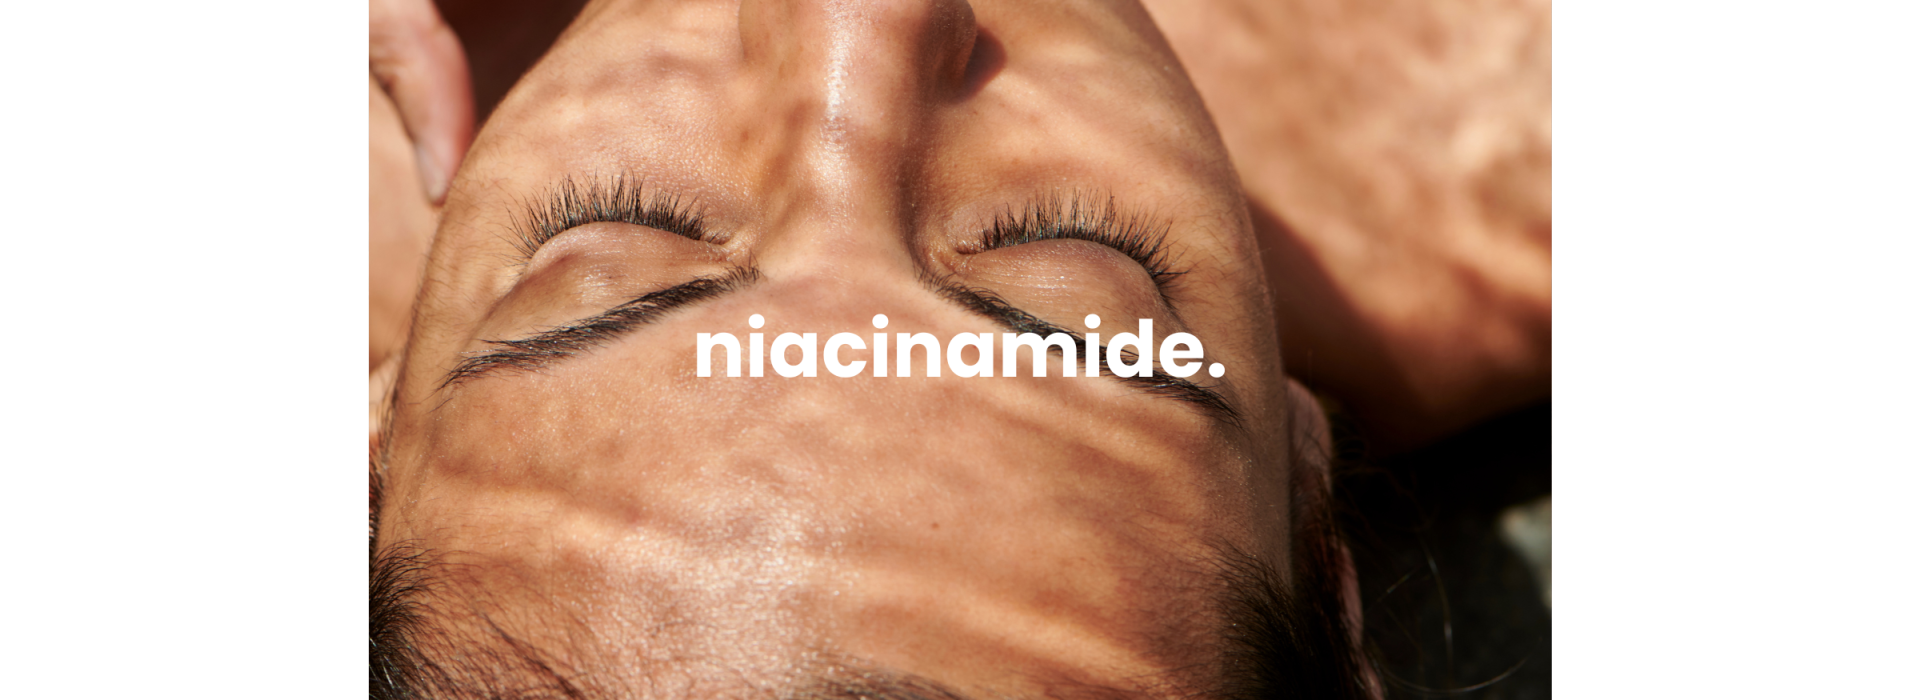 Skincare Ingredients niacinamide